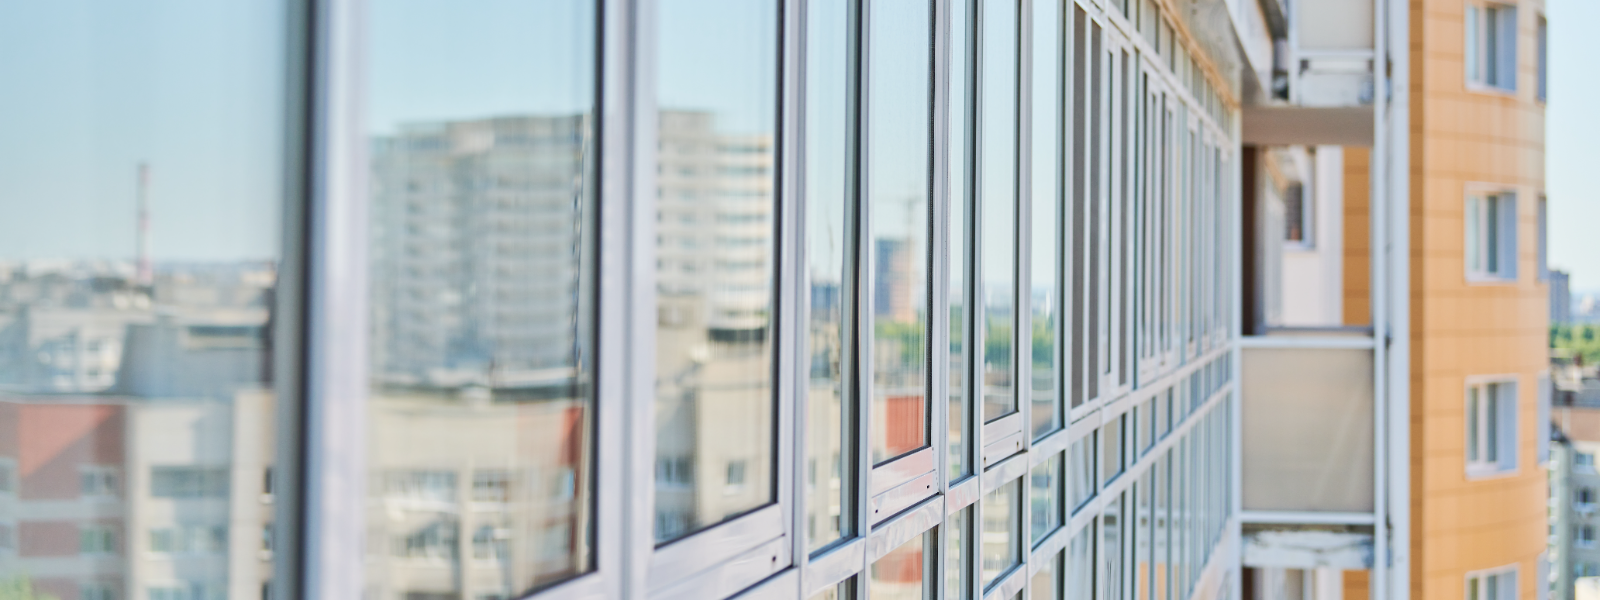 AKNAREMONT OÜ - Tegeleme aknaparanduse ja -hooldusega, pakkudes professionaalset teenust, et tagada klientide akende opti...